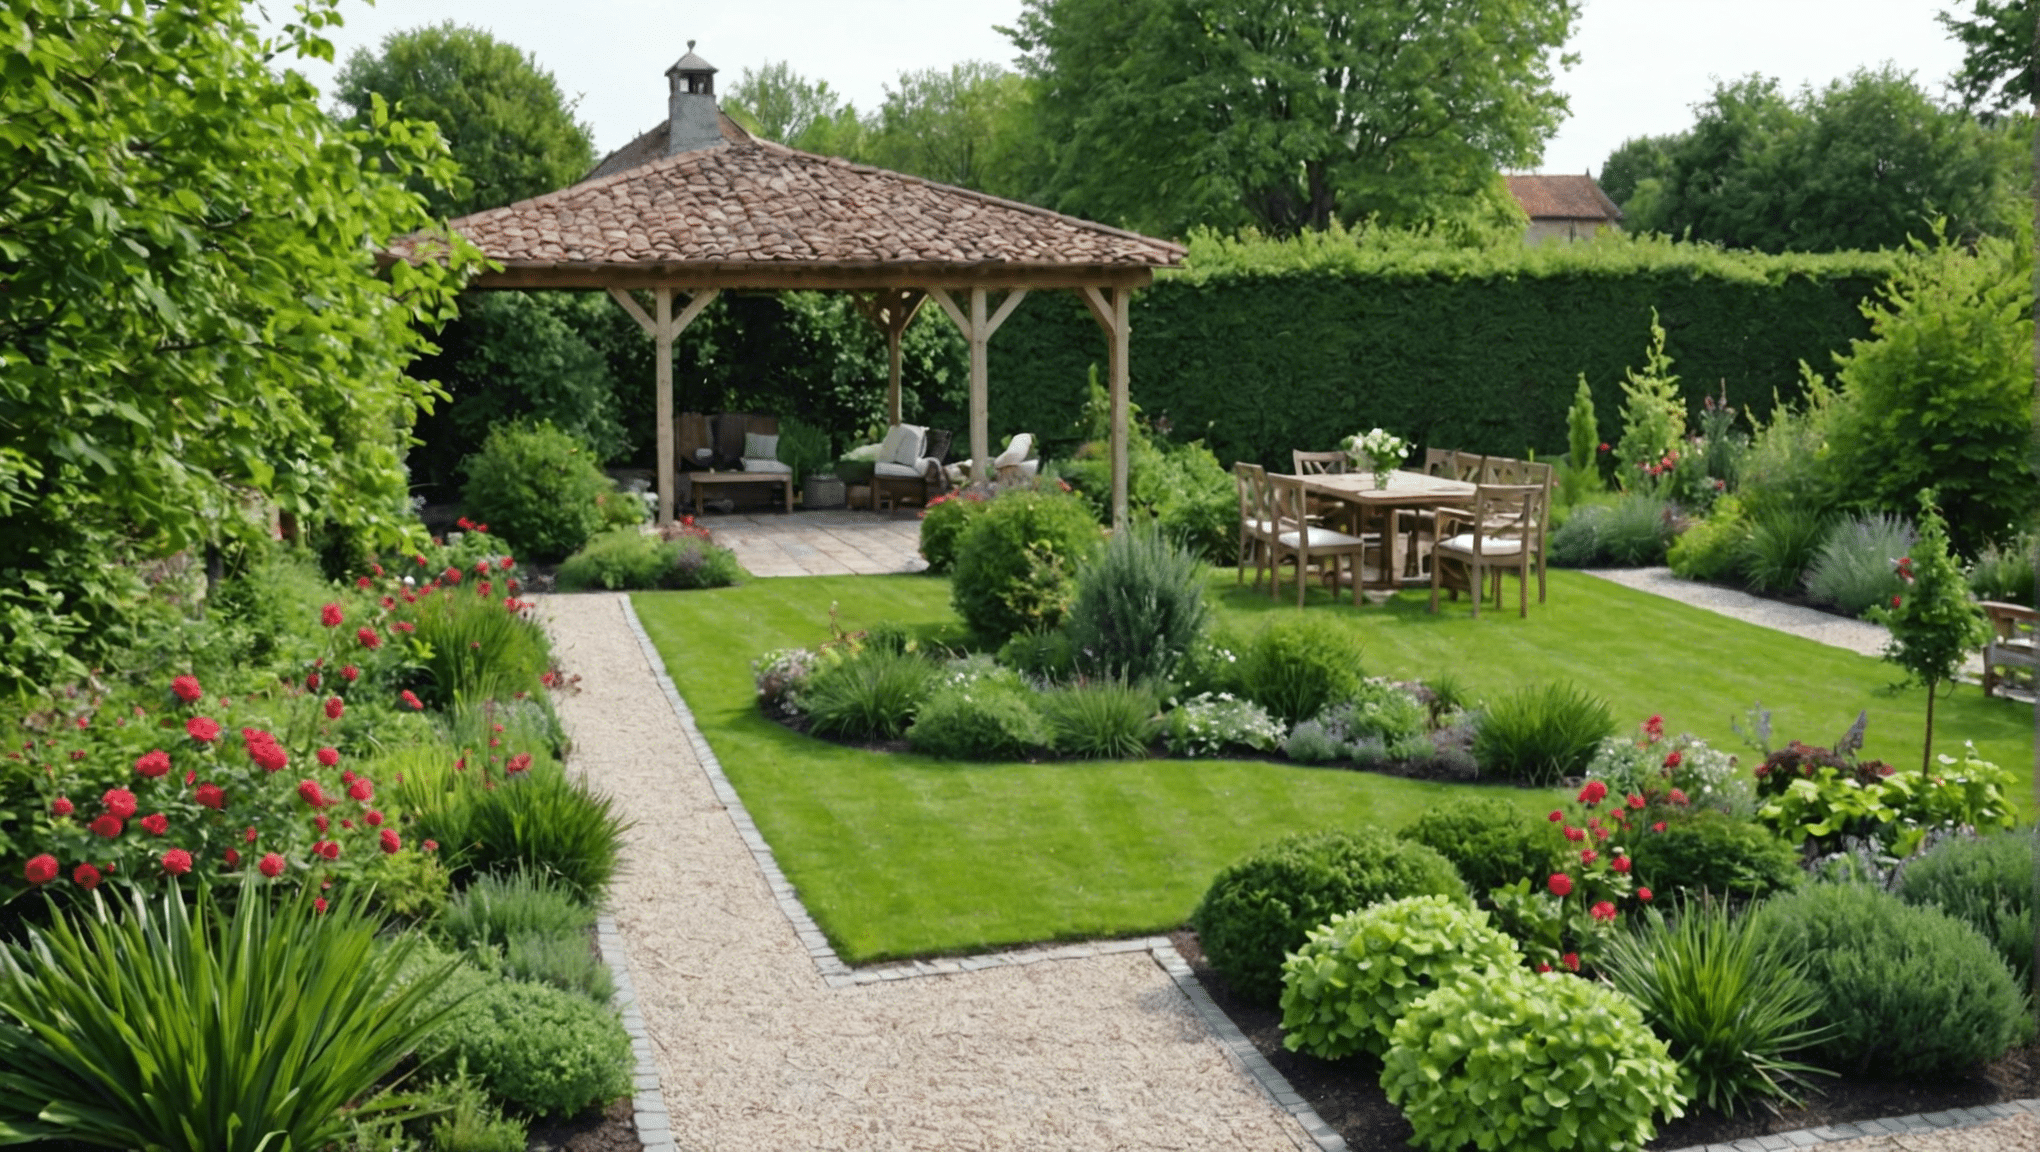 découvrez les différentes tendances et styles de jardin pour trouver celui qui correspond à vos envies et à votre espace. conseils et inspirations pour choisir le style de jardin idéal.